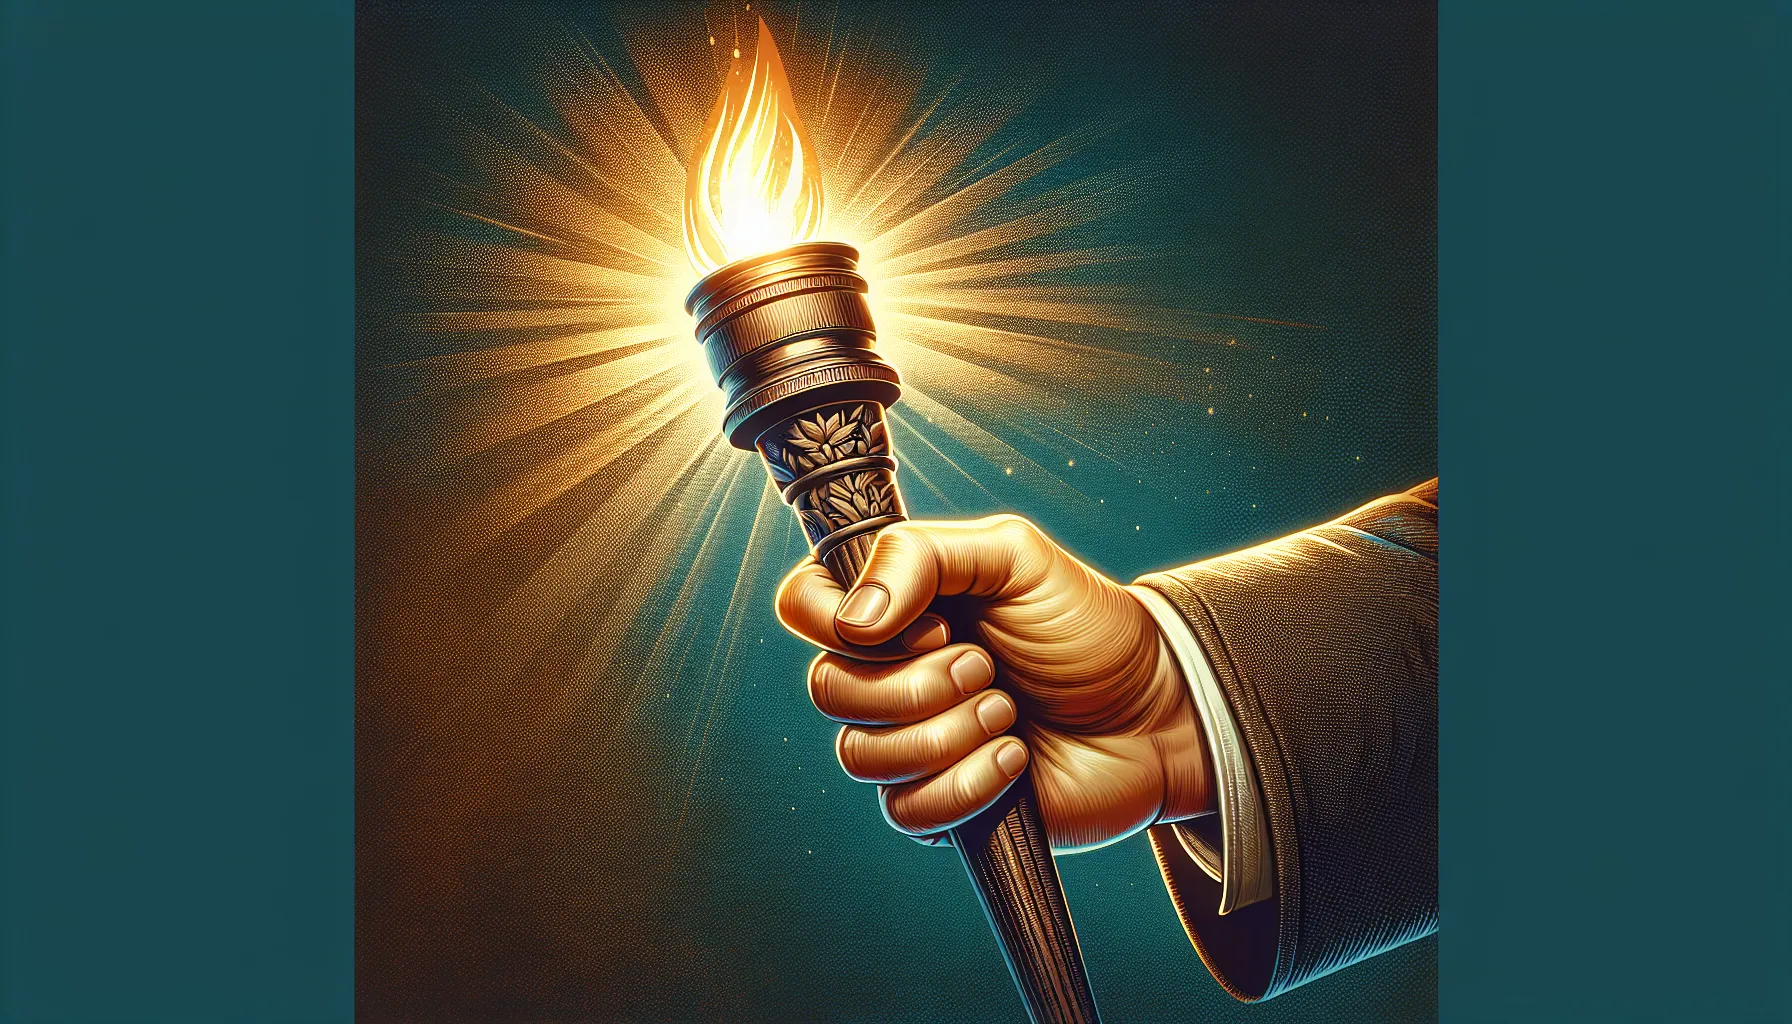 Ilustración mostrando una mano sosteniendo una antorcha encendida, simbolizando la luz de la fe y la misión del apostolado siguiendo los principios bíblicos.